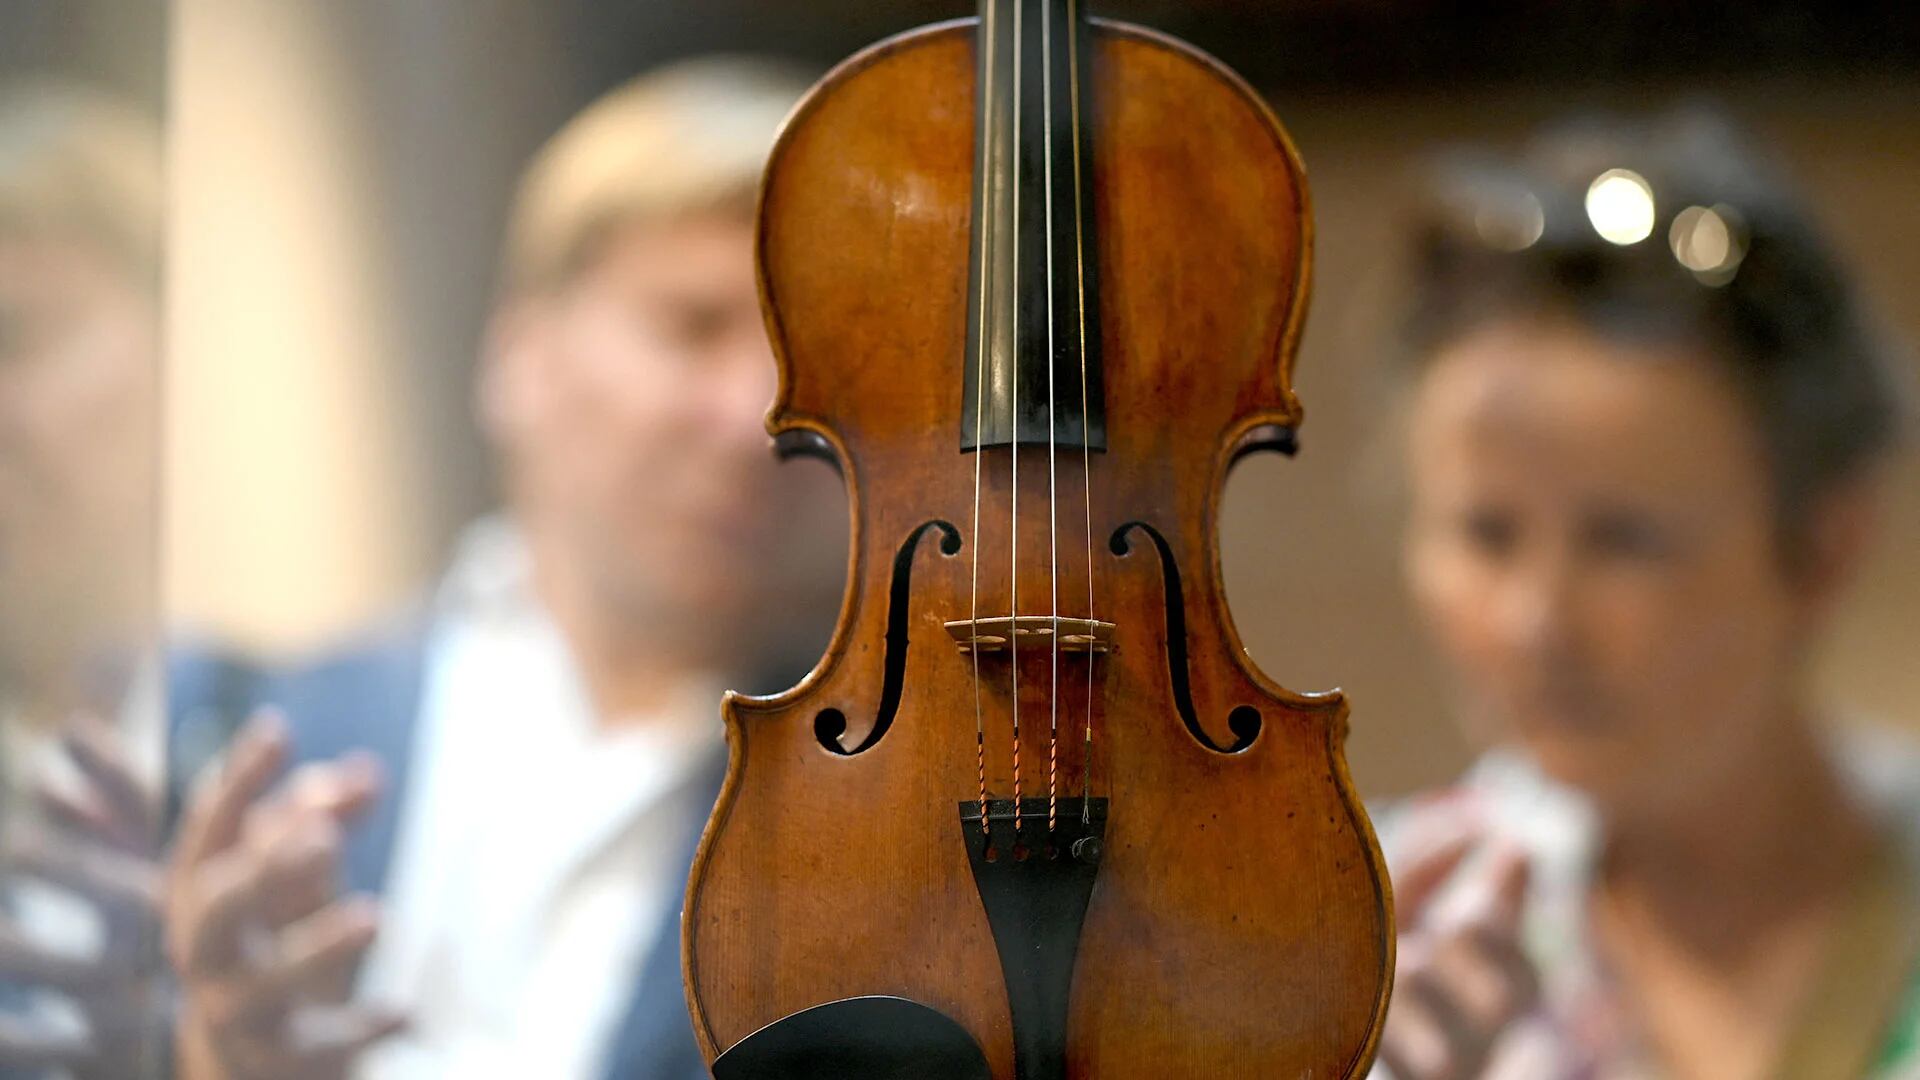 Violín Stradivarius de 1720, propiedad del violinista italiano y director artístico de la Casa Stradivari, Fabrizio von Arx (Foto: Gabriel Bouys / AFP)
